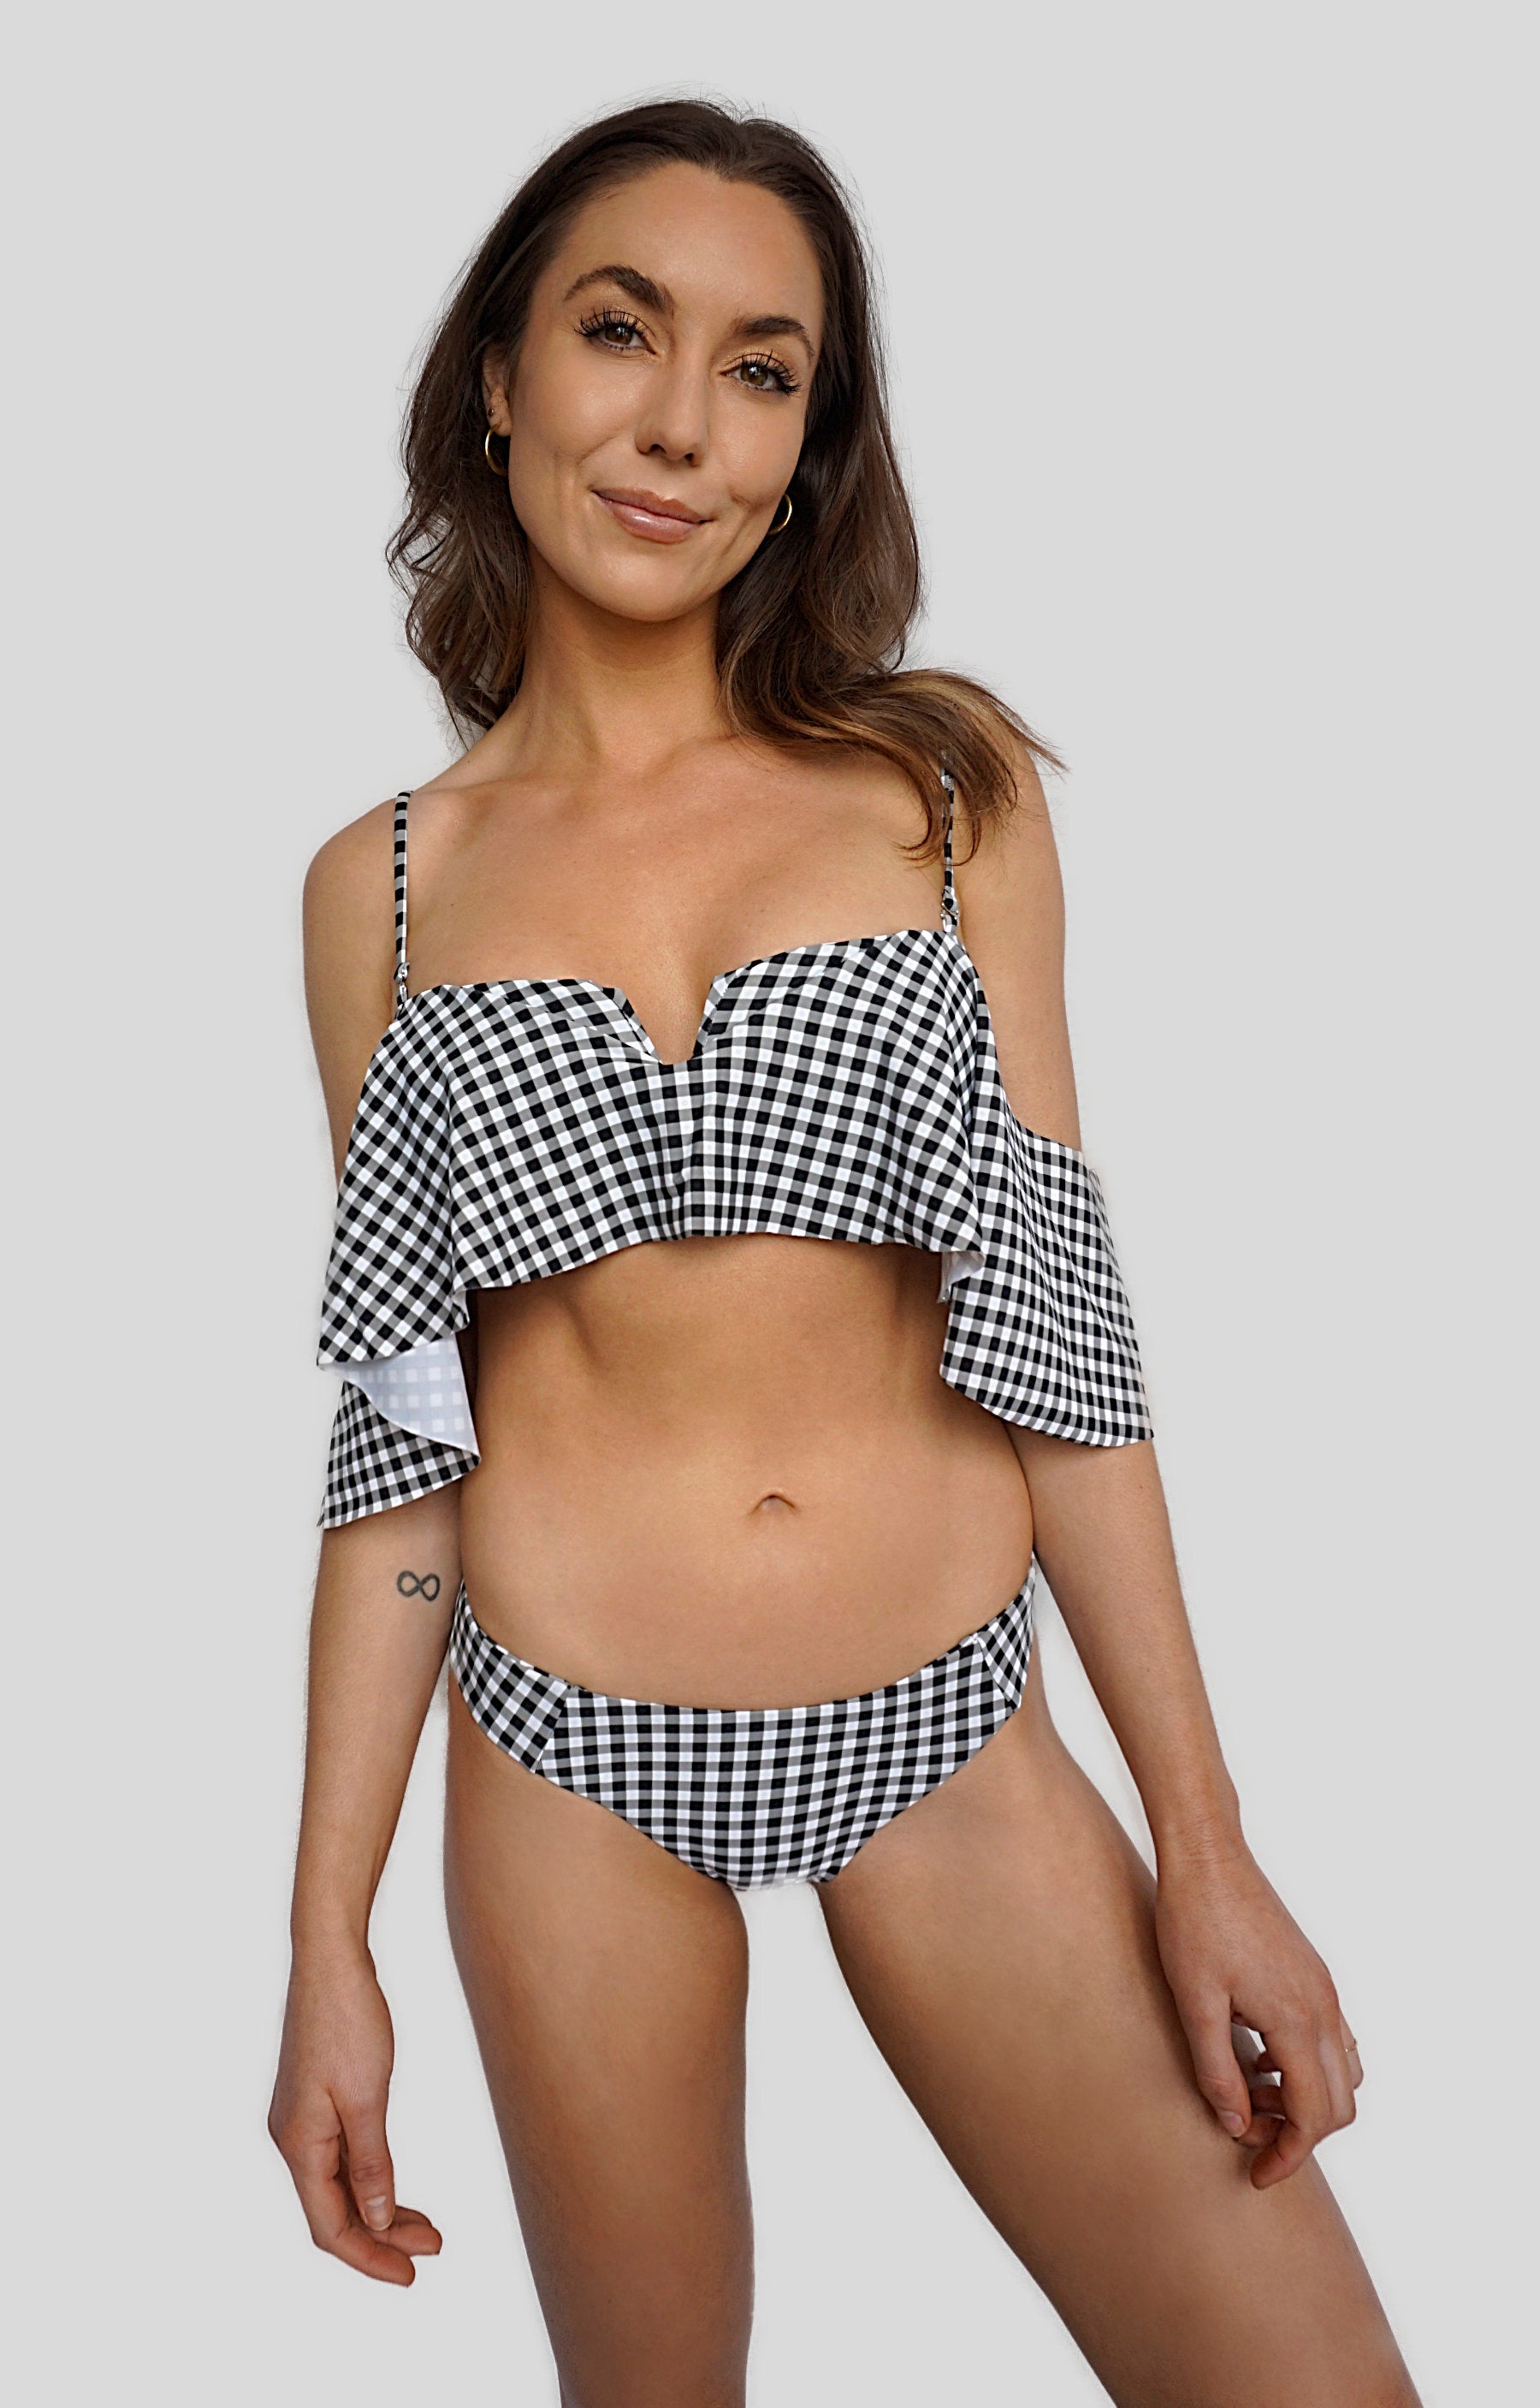 Carling Liski wears Canadian swimwear brand Prairie Swim black and white gingham ruffle off the shoulder bikini